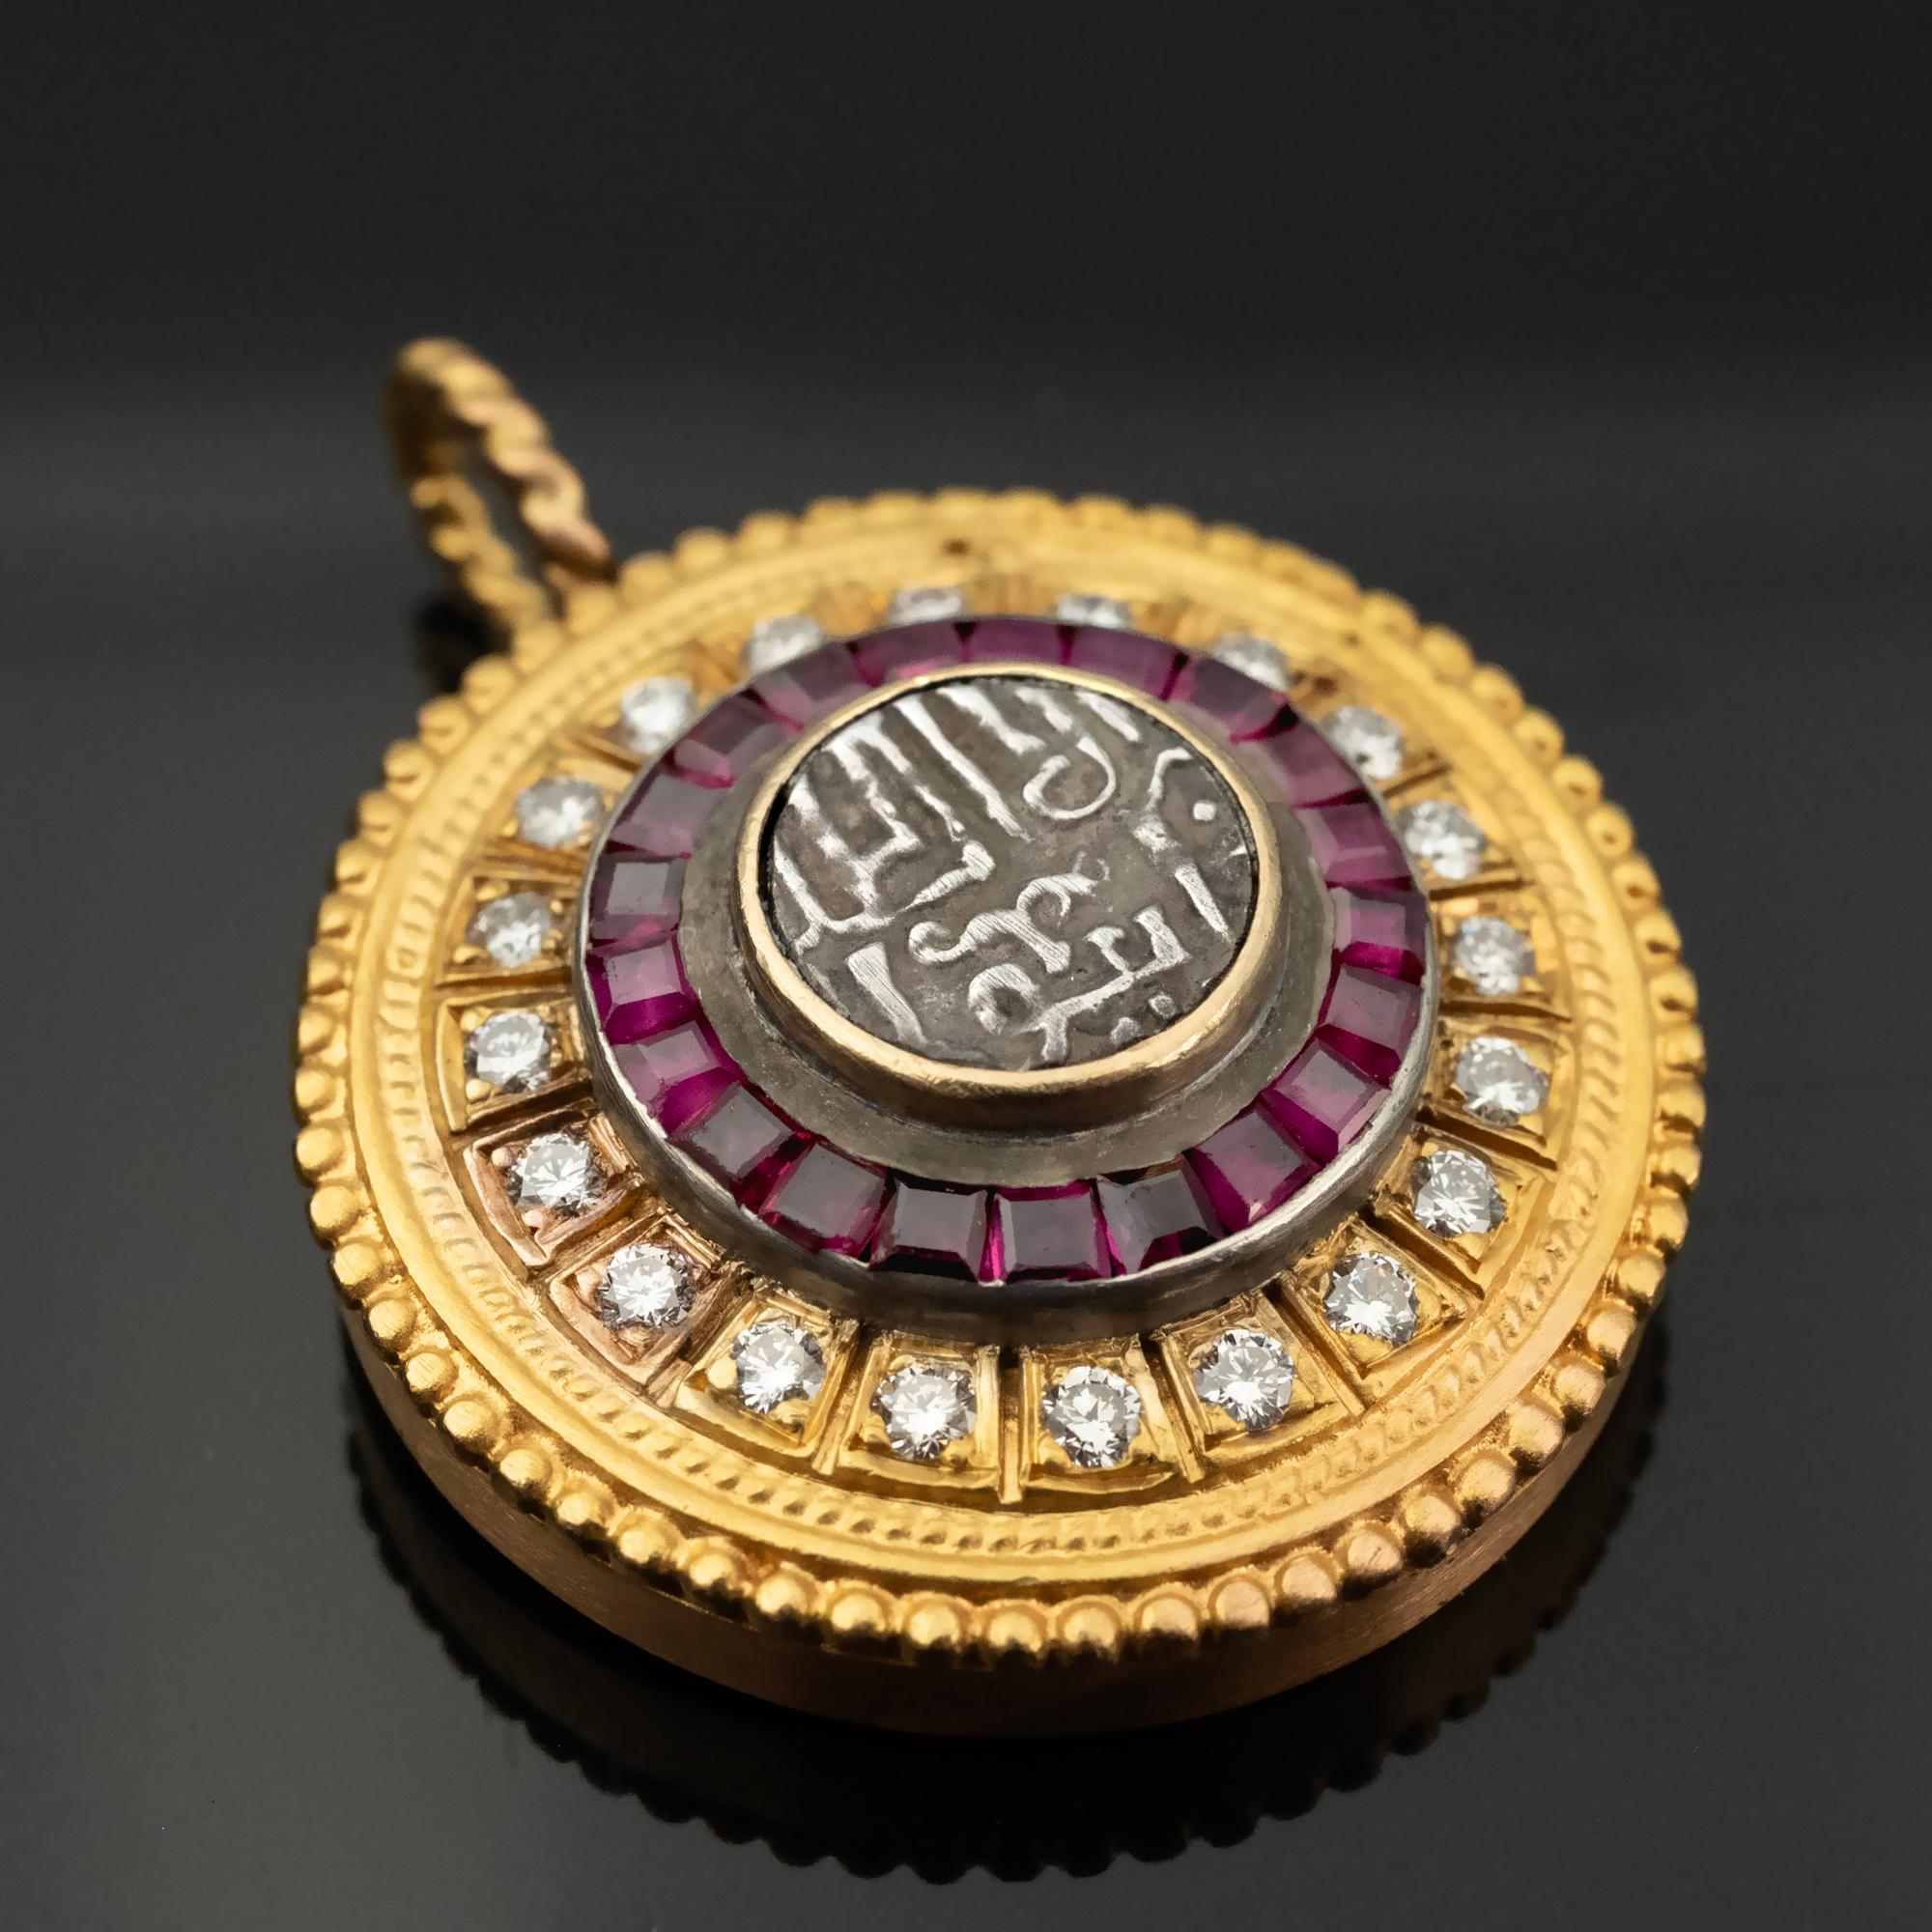 
Fabriqué à la main en luxueux or 22 carats, ce collier-pendentif témoigne de l'élégance byzantine, avec un poids de 14,1 grammes. En son cœur se trouve une pièce de monnaie ancienne ornée d'une délicate écriture arabe, sur fond d'argent poli. Cette